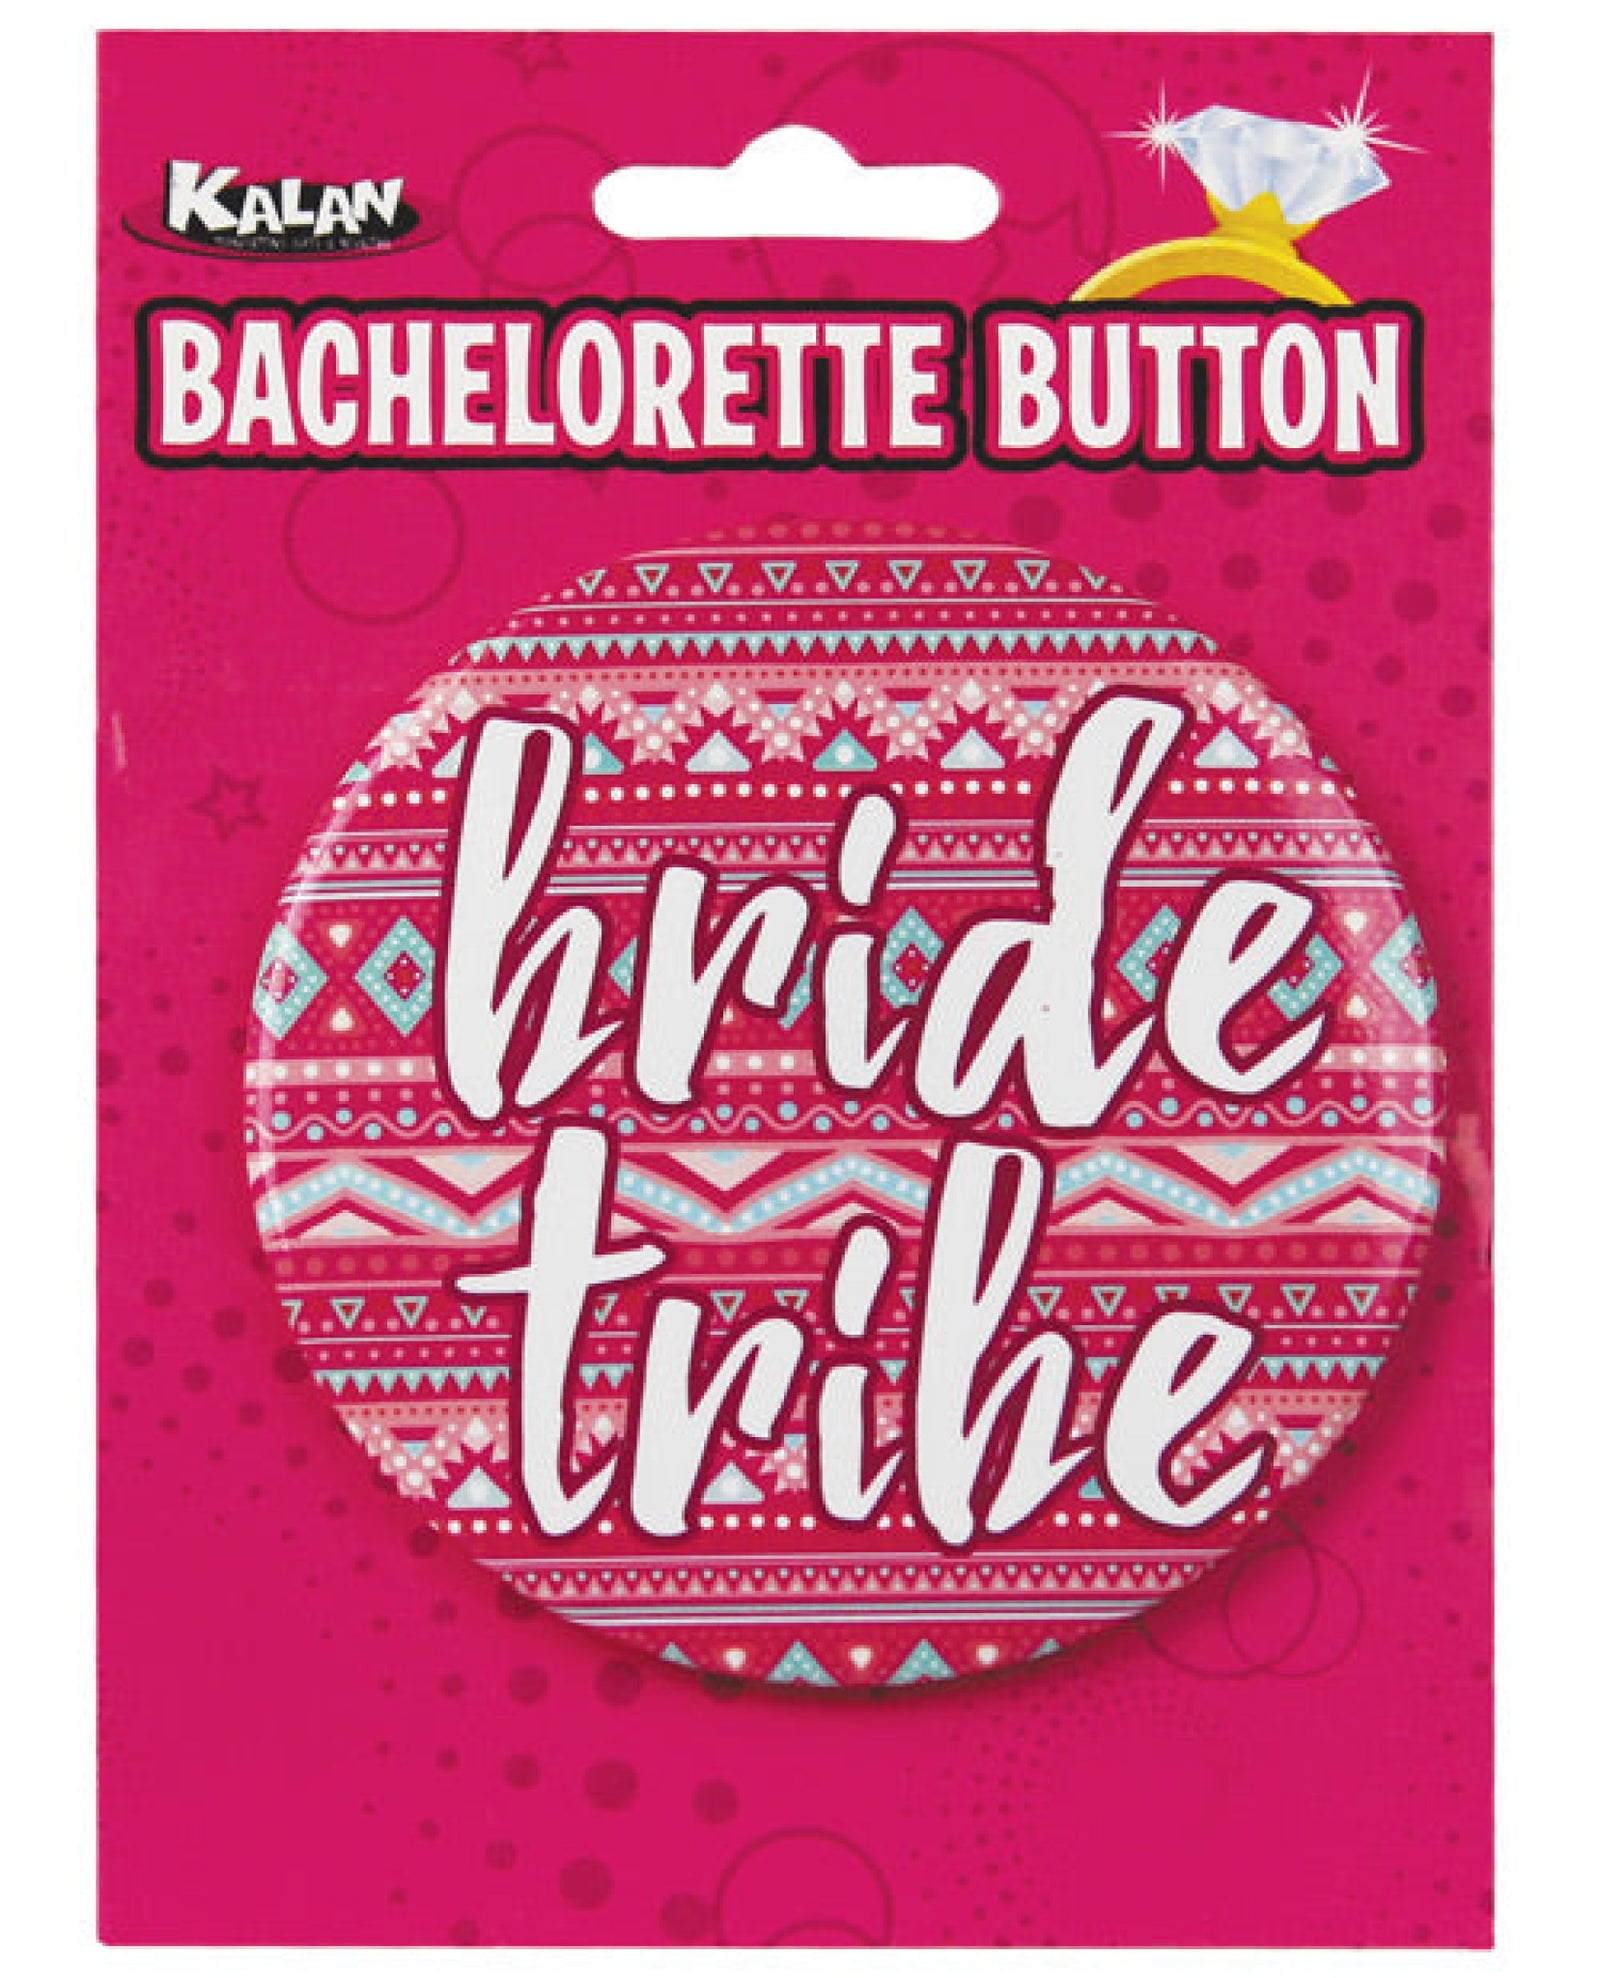 Bachelorette Button - Bride Tribe Pink-white Kalan